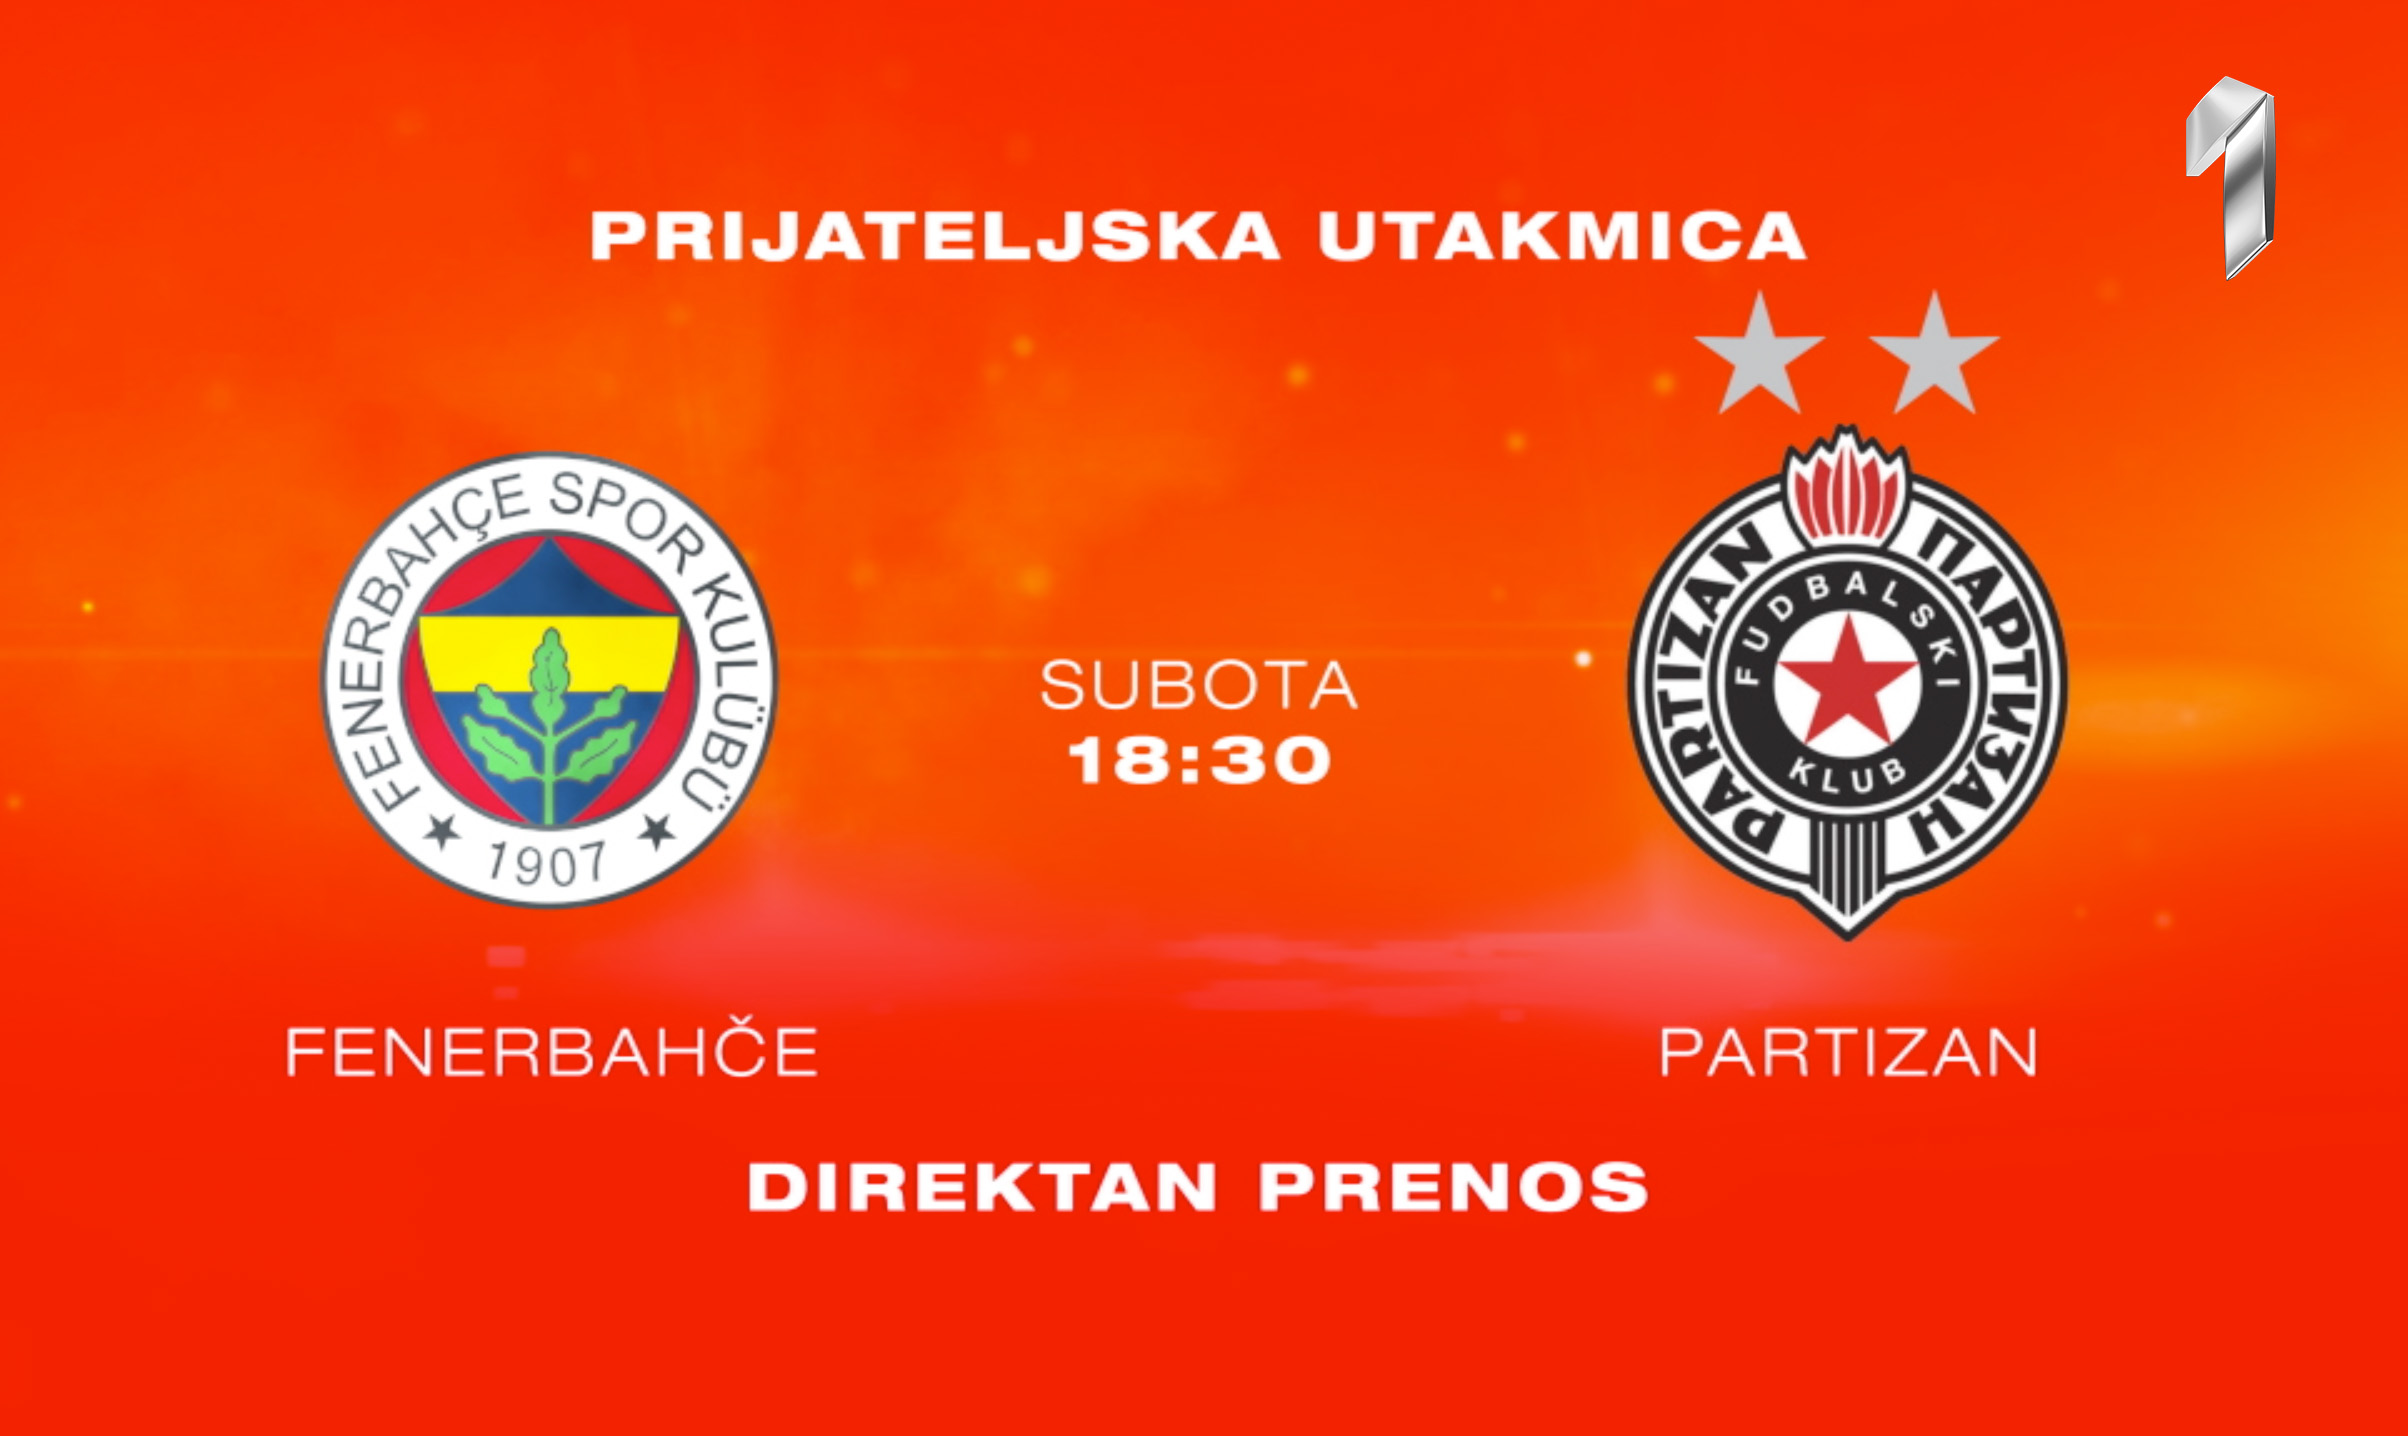 Partizan – Fenerbahče na Prvoj TV